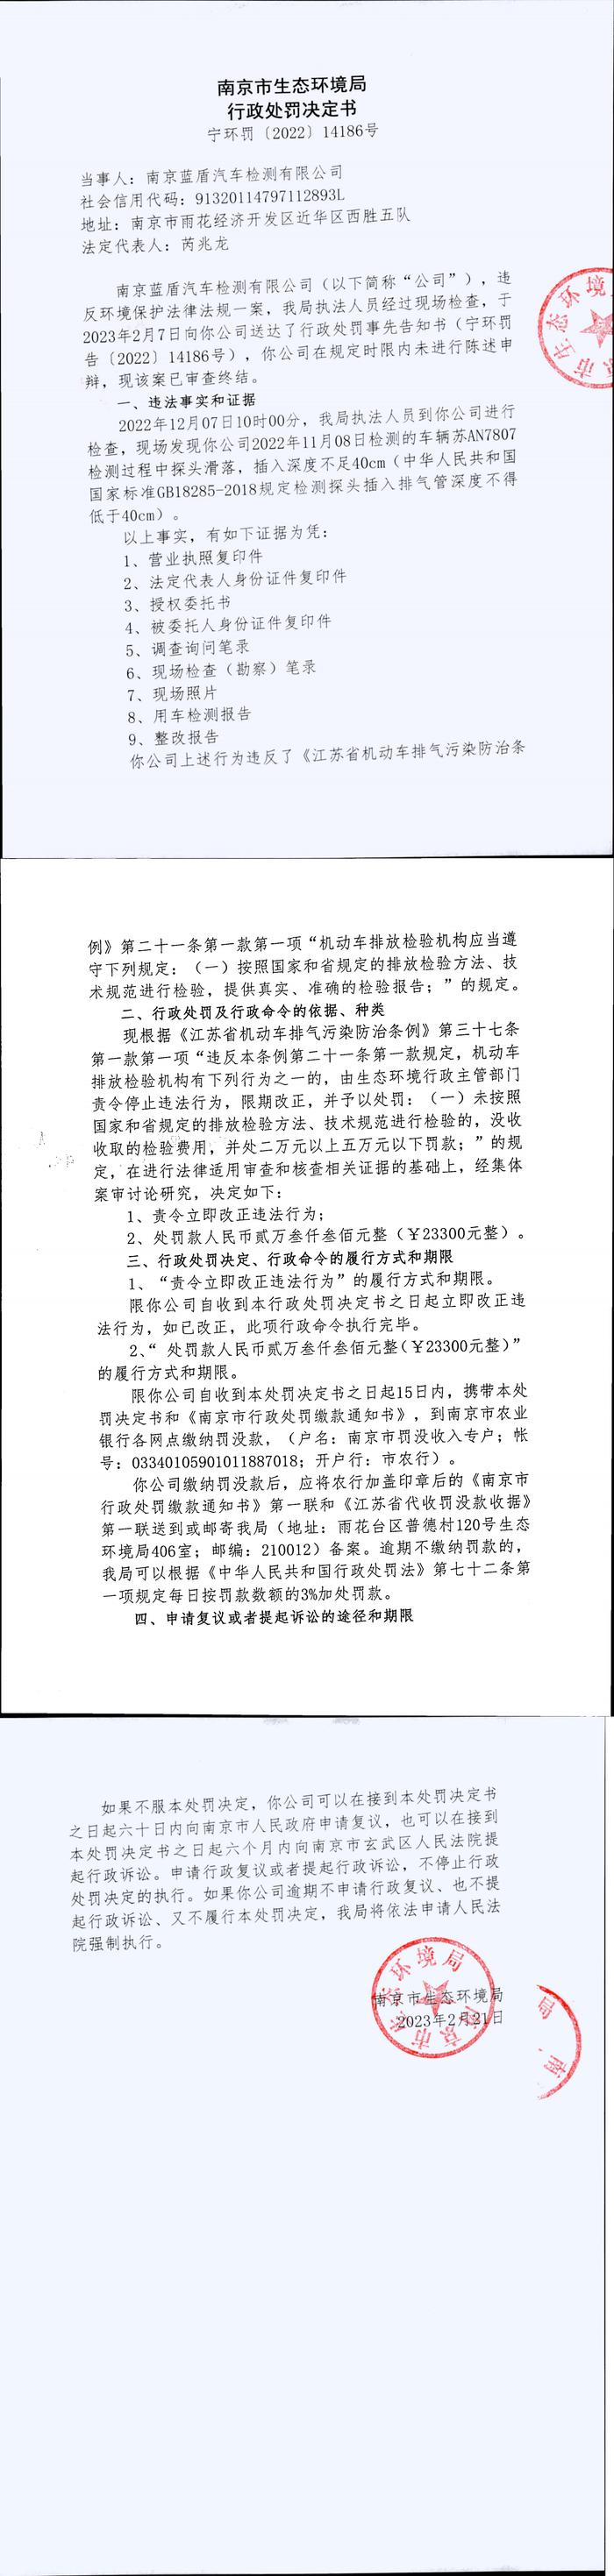 南京市生态环境局公开对南京蓝盾汽车检测有限公司行政处罚信息